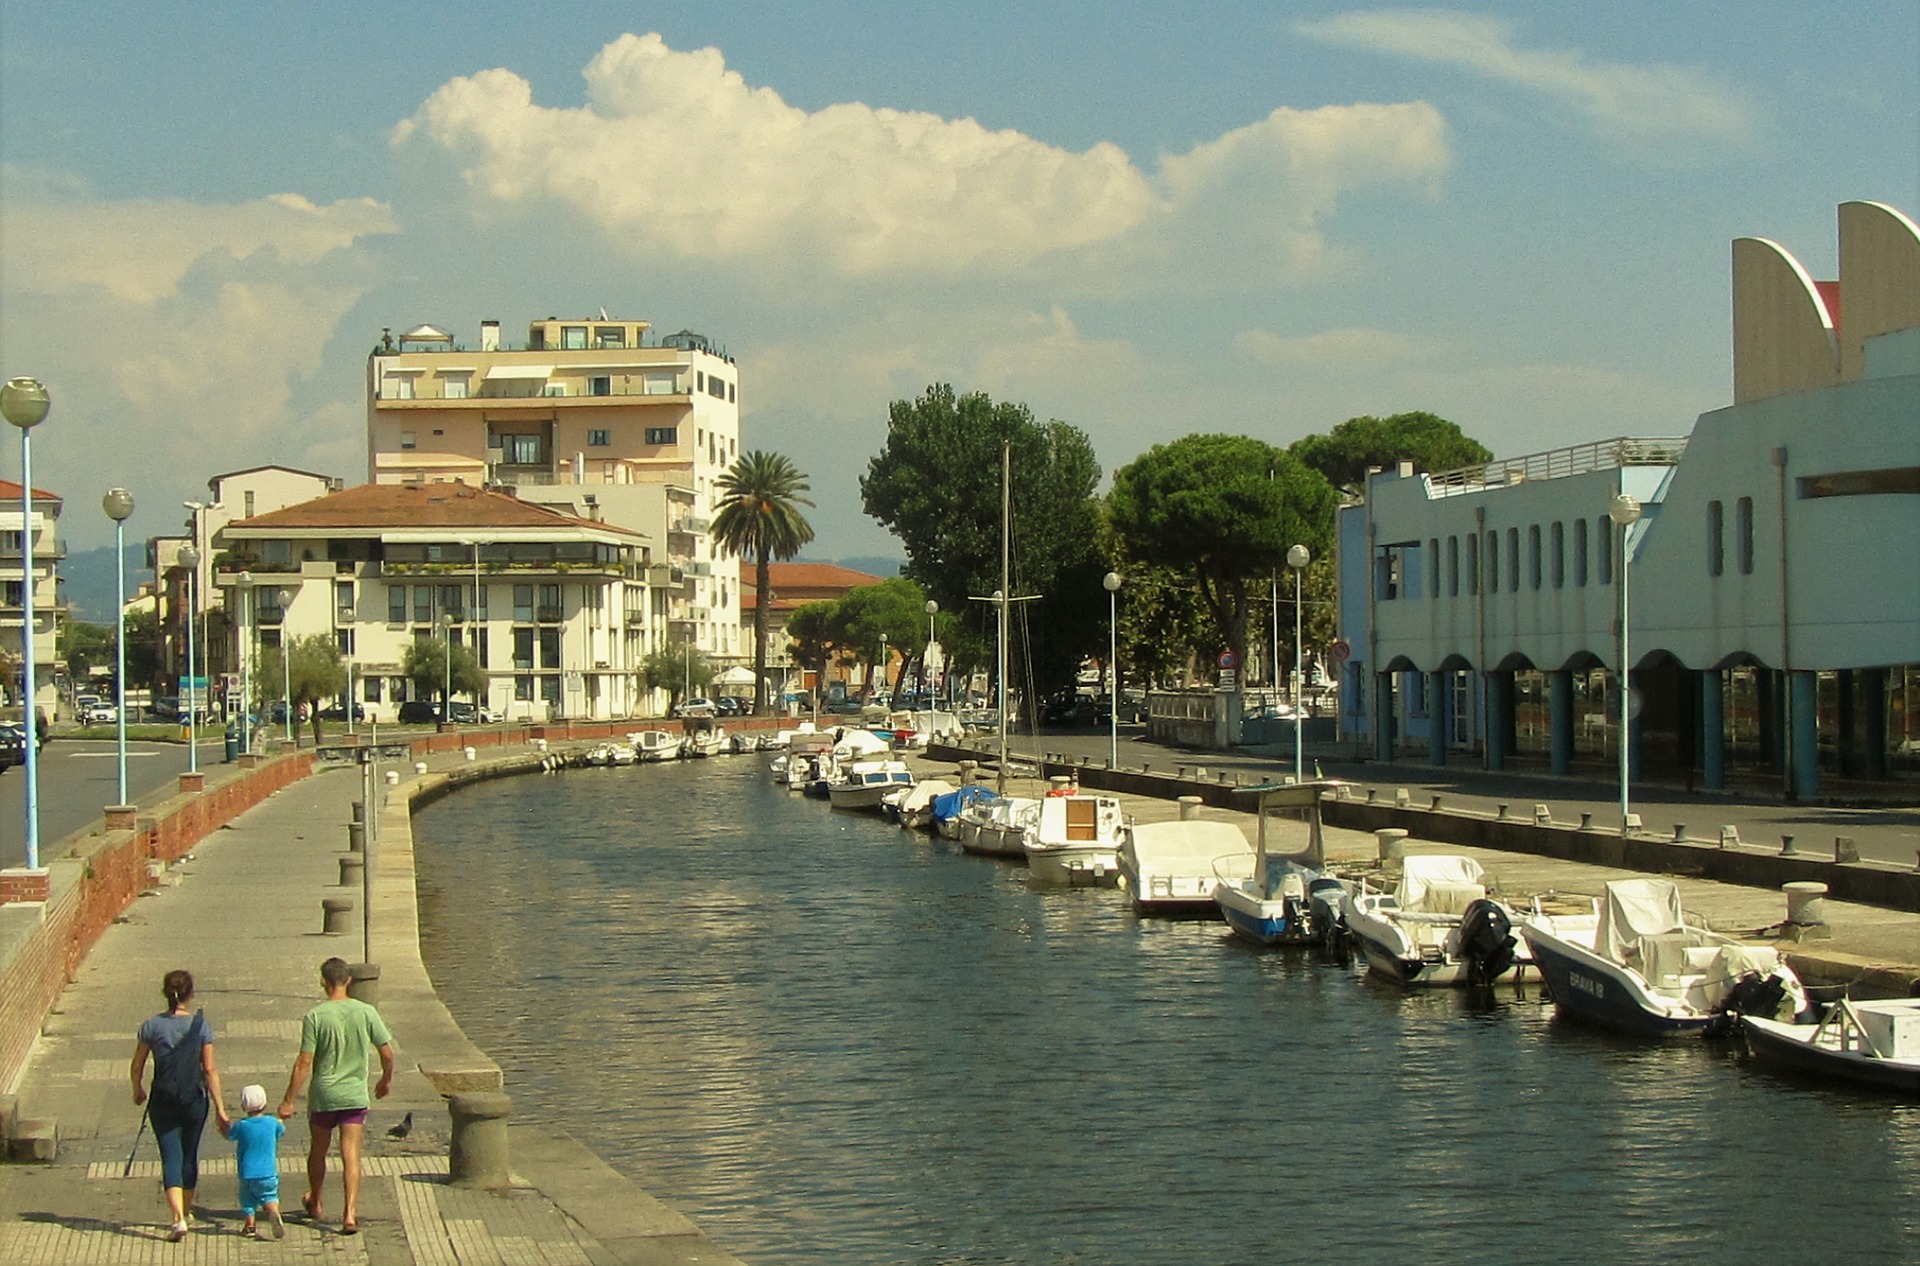 Crisi Turismo, Zucconi (FDI): Viareggio ha bisogno di politiche decise